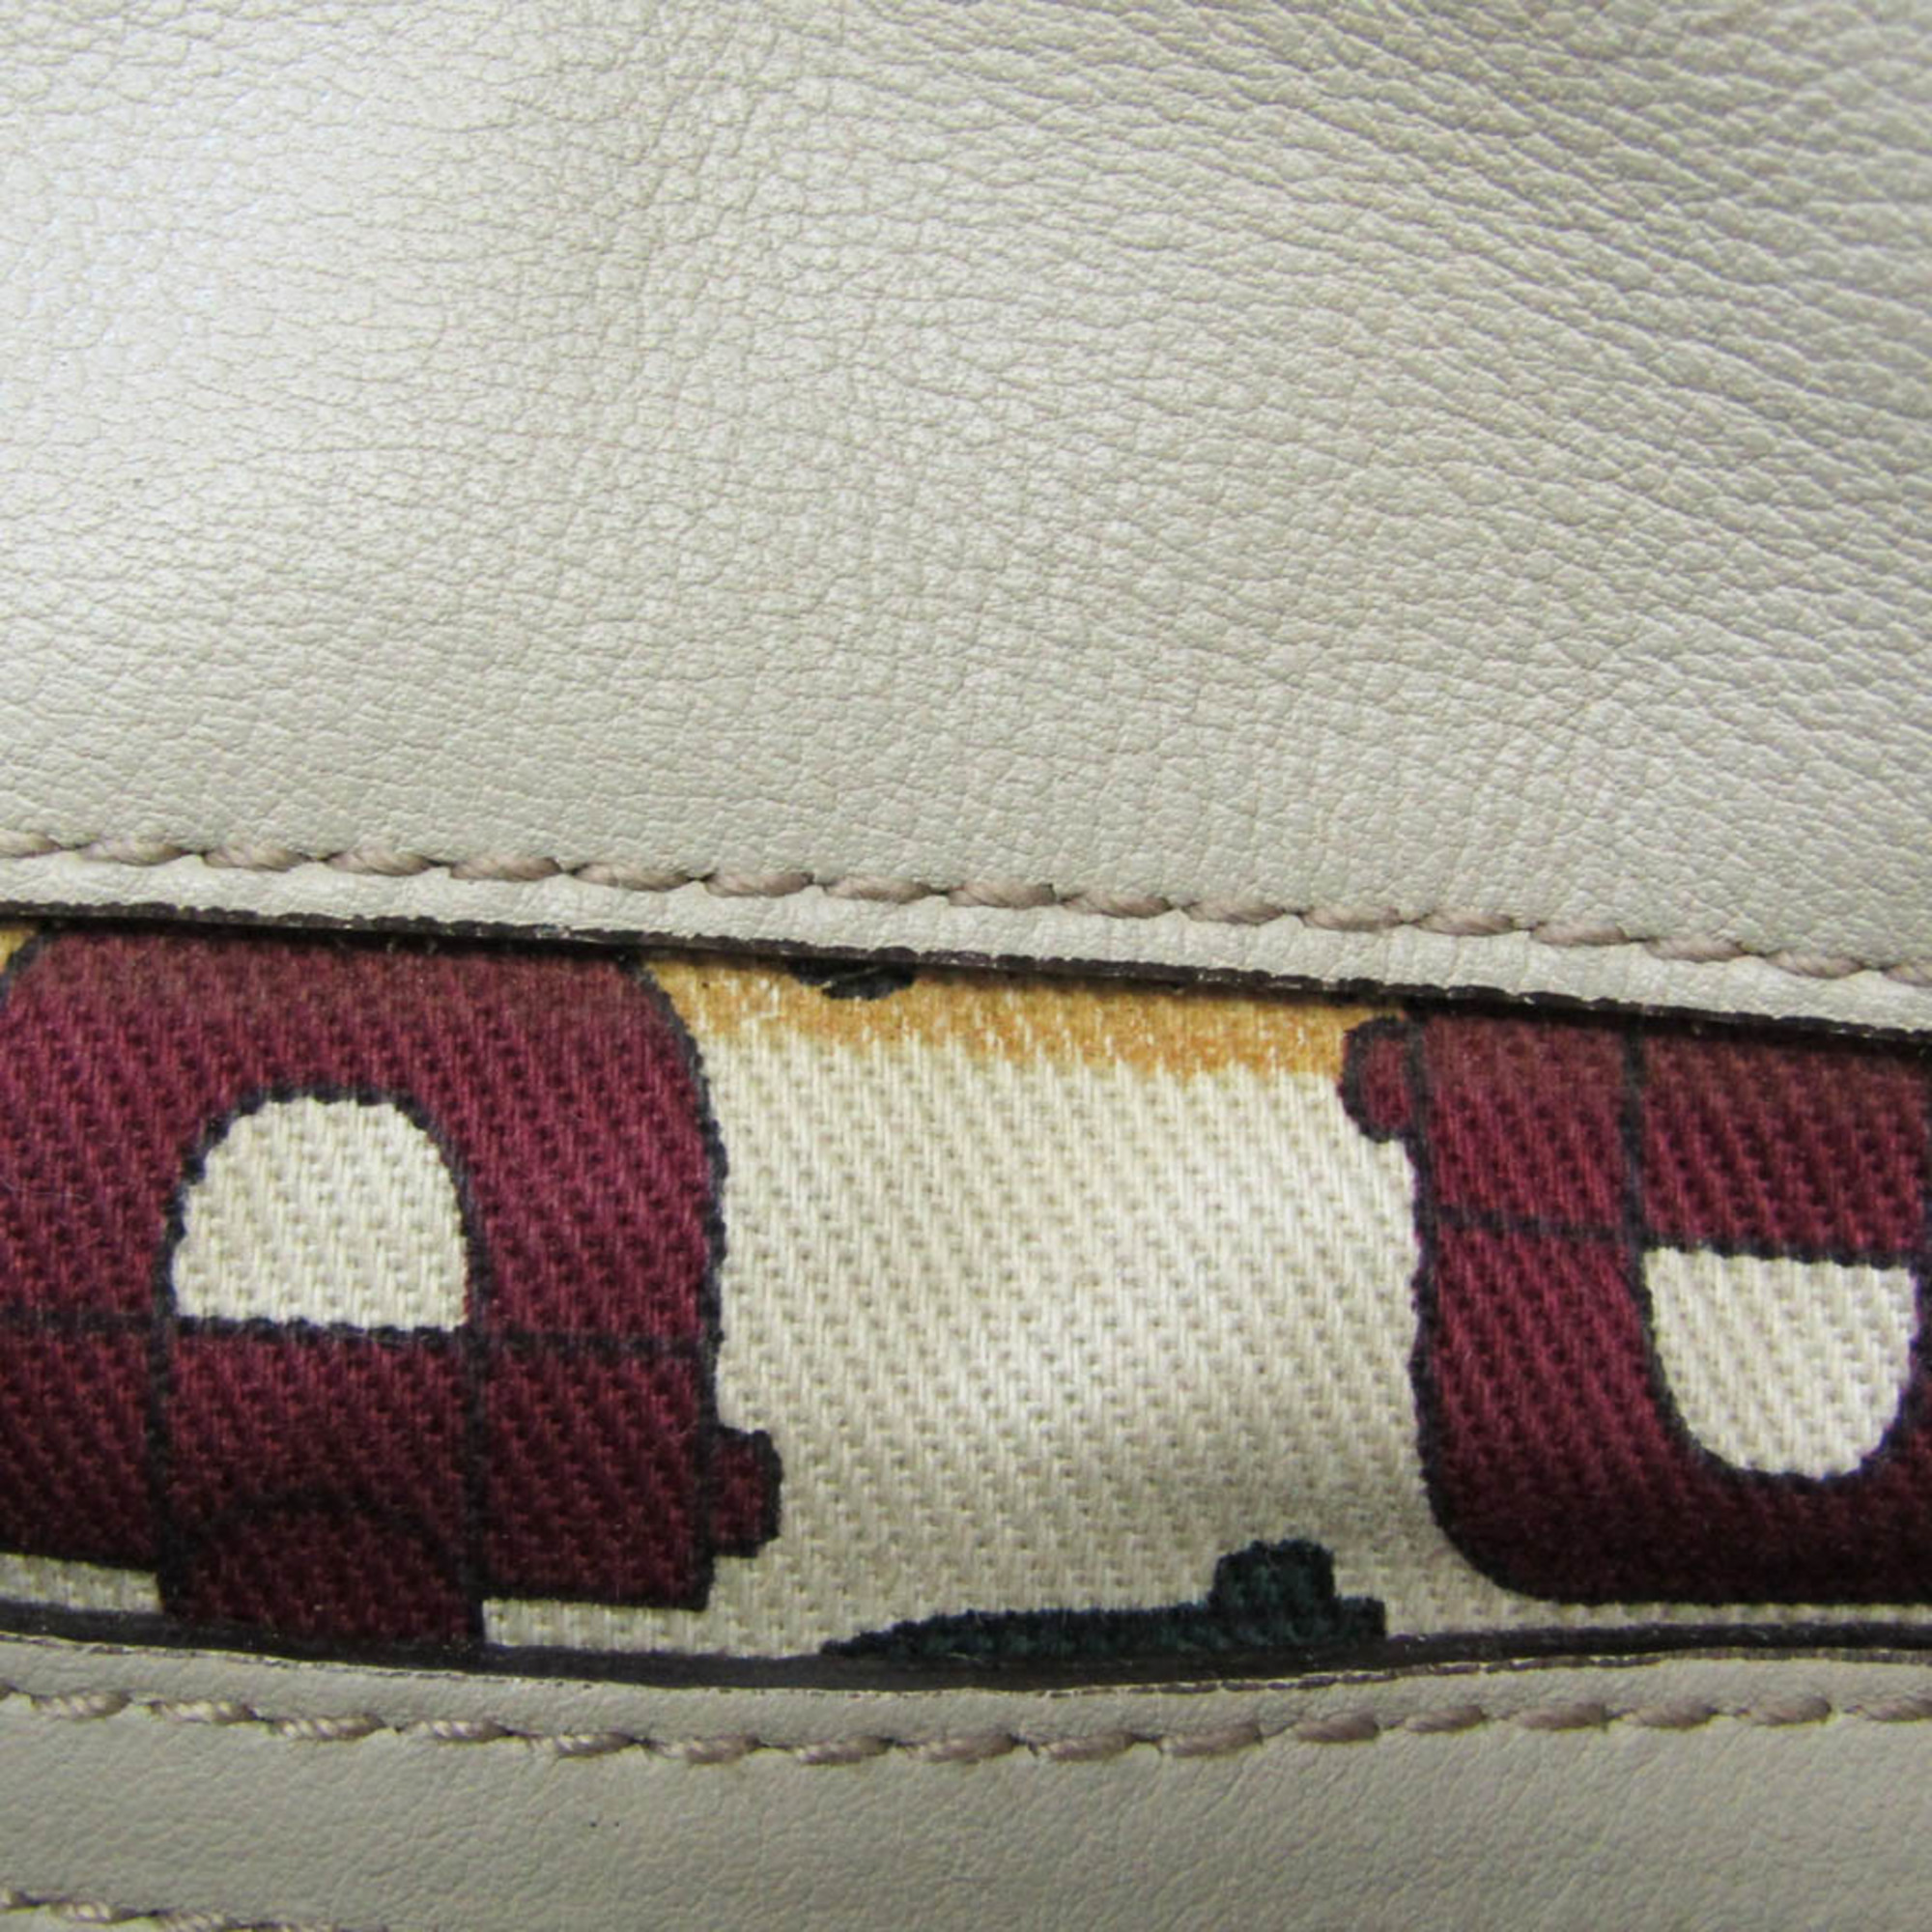 Gucci Guccissima Hysteria 197020 Women's Leather Handbag Cream